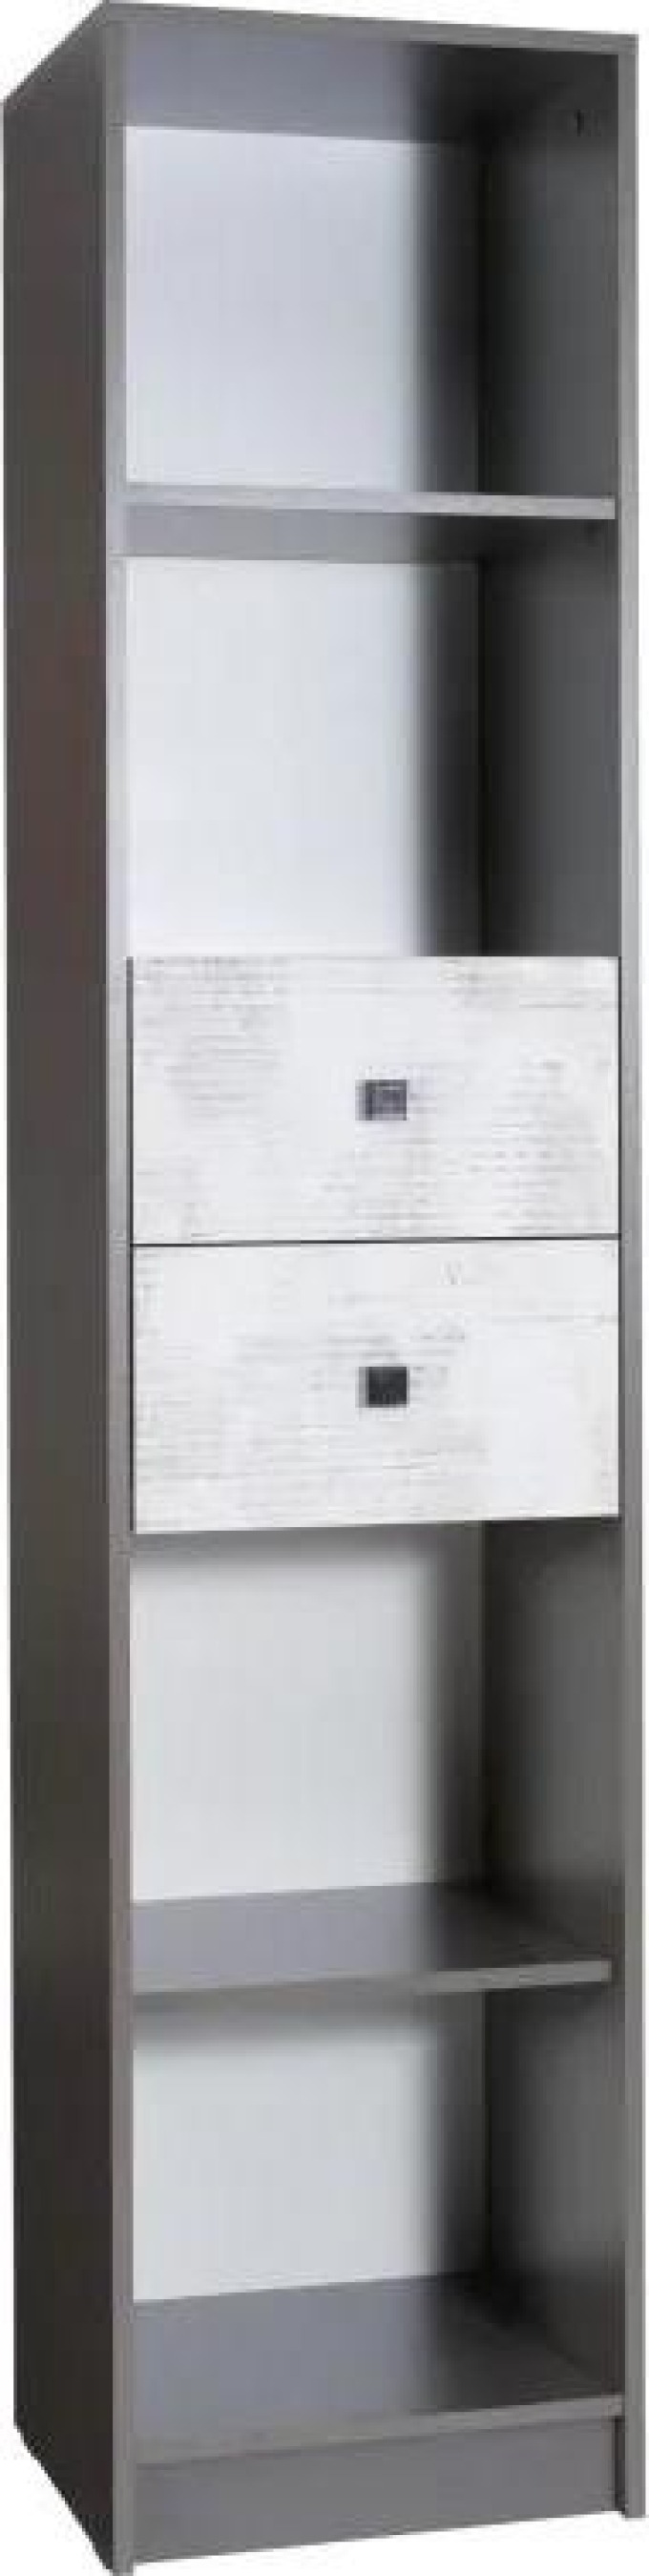 Knihovna TOMMY 6, vyrobena z kvalitního lamina v kombinaci šedé a bílé barvy, s plastovými úchytky v šedé barvě